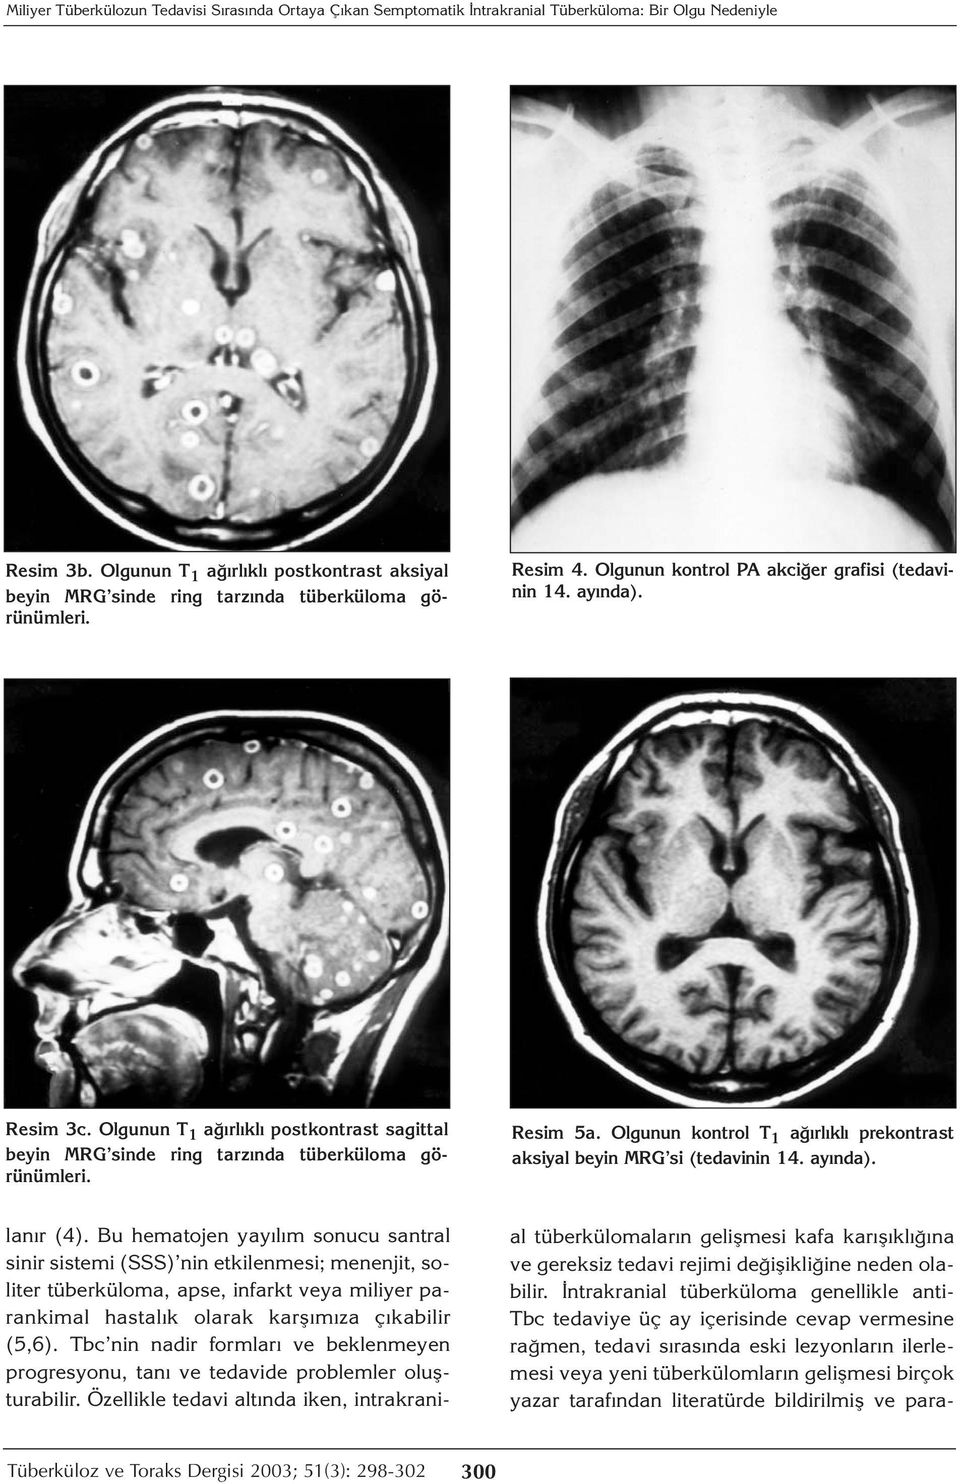 Olgunun T 1 ağırlıklı postkontrast sagittal beyin MRG sinde ring tarzında tüberküloma görünümleri. Resim 5a. Olgunun kontrol T 1 ağırlıklı prekontrast aksiyal beyin MRG si (tedavinin 14. ayında).